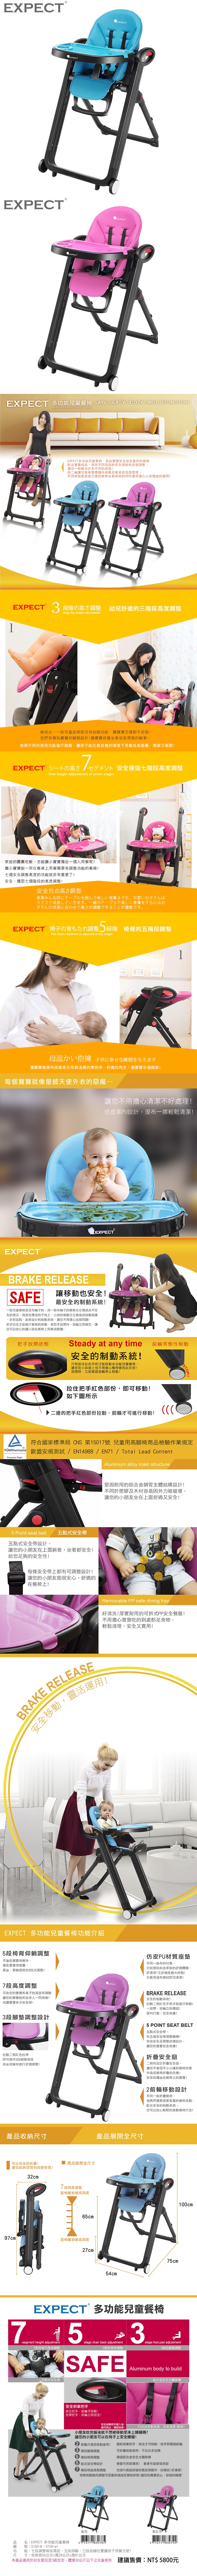 傳佳知寶-EXPECT多功能兒童餐椅(藍色/紫紅色)S150